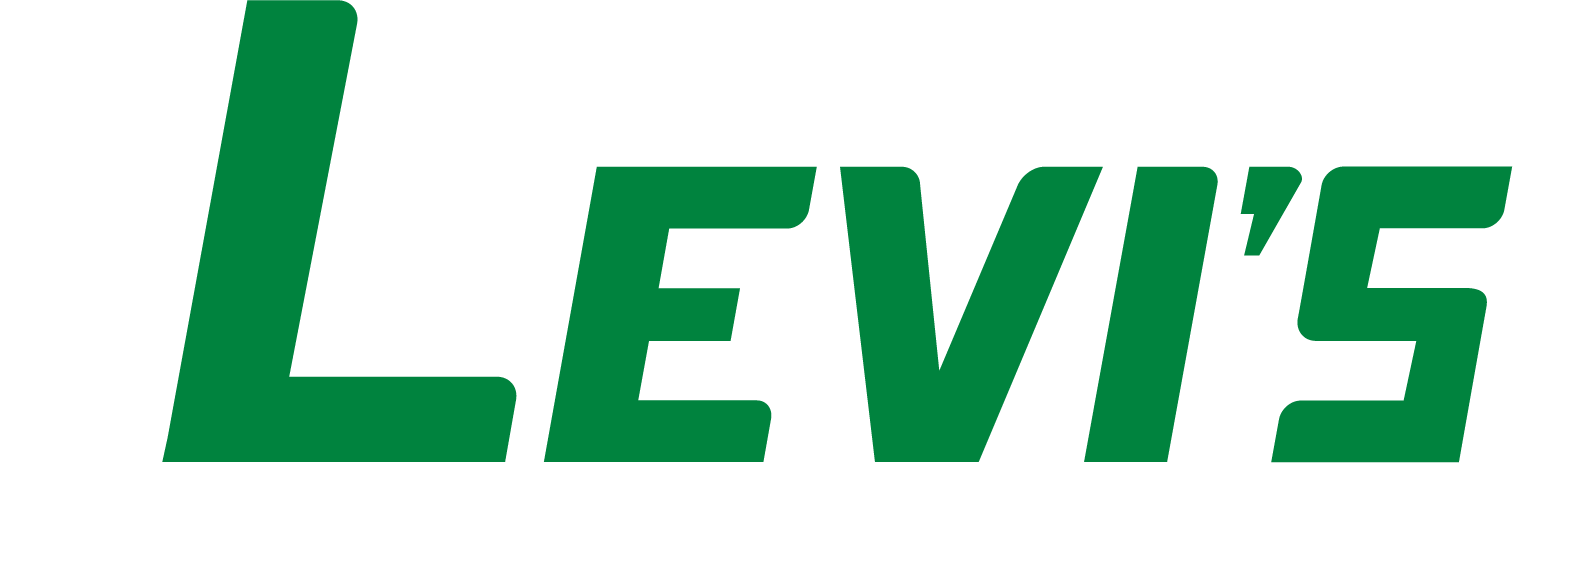 Levi's Building Components